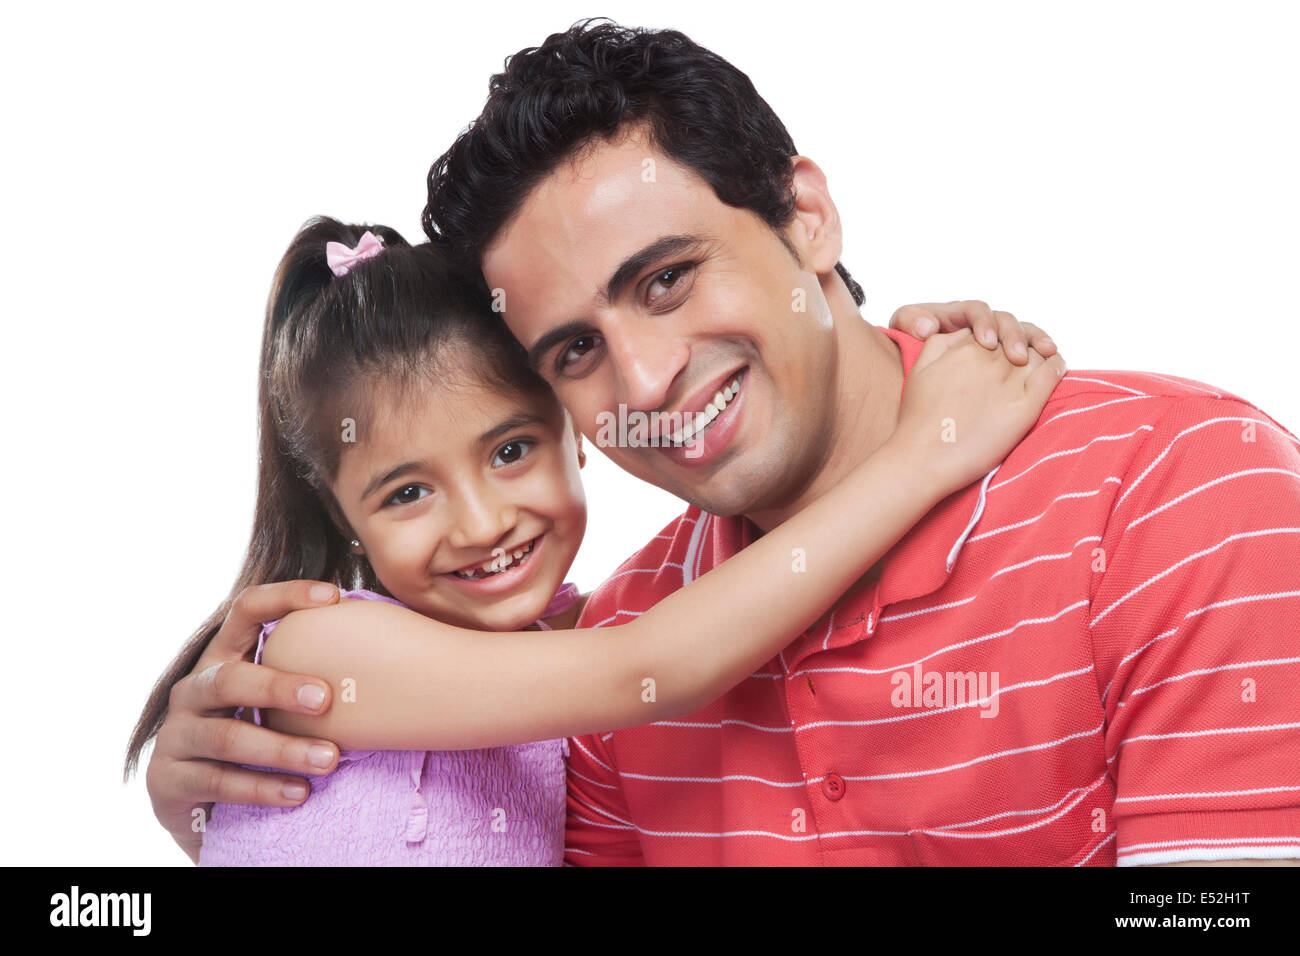 Ritratto di felice figlia abbracciando padre contro uno sfondo bianco Foto Stock